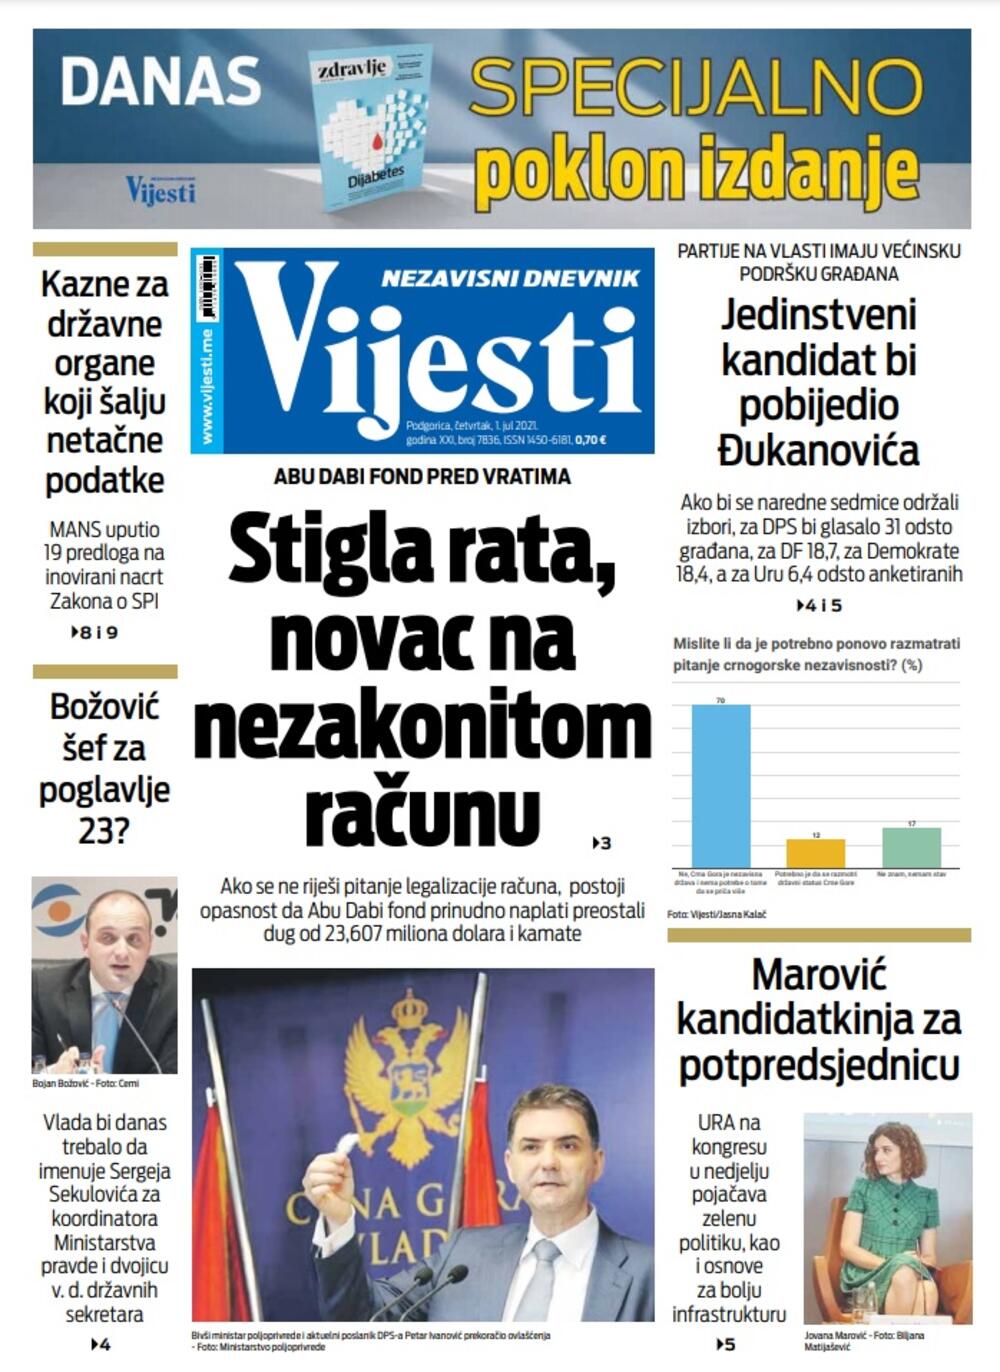 Naslovna strana "Vijesti" za 1. jul 2021., Foto: Vijesti online